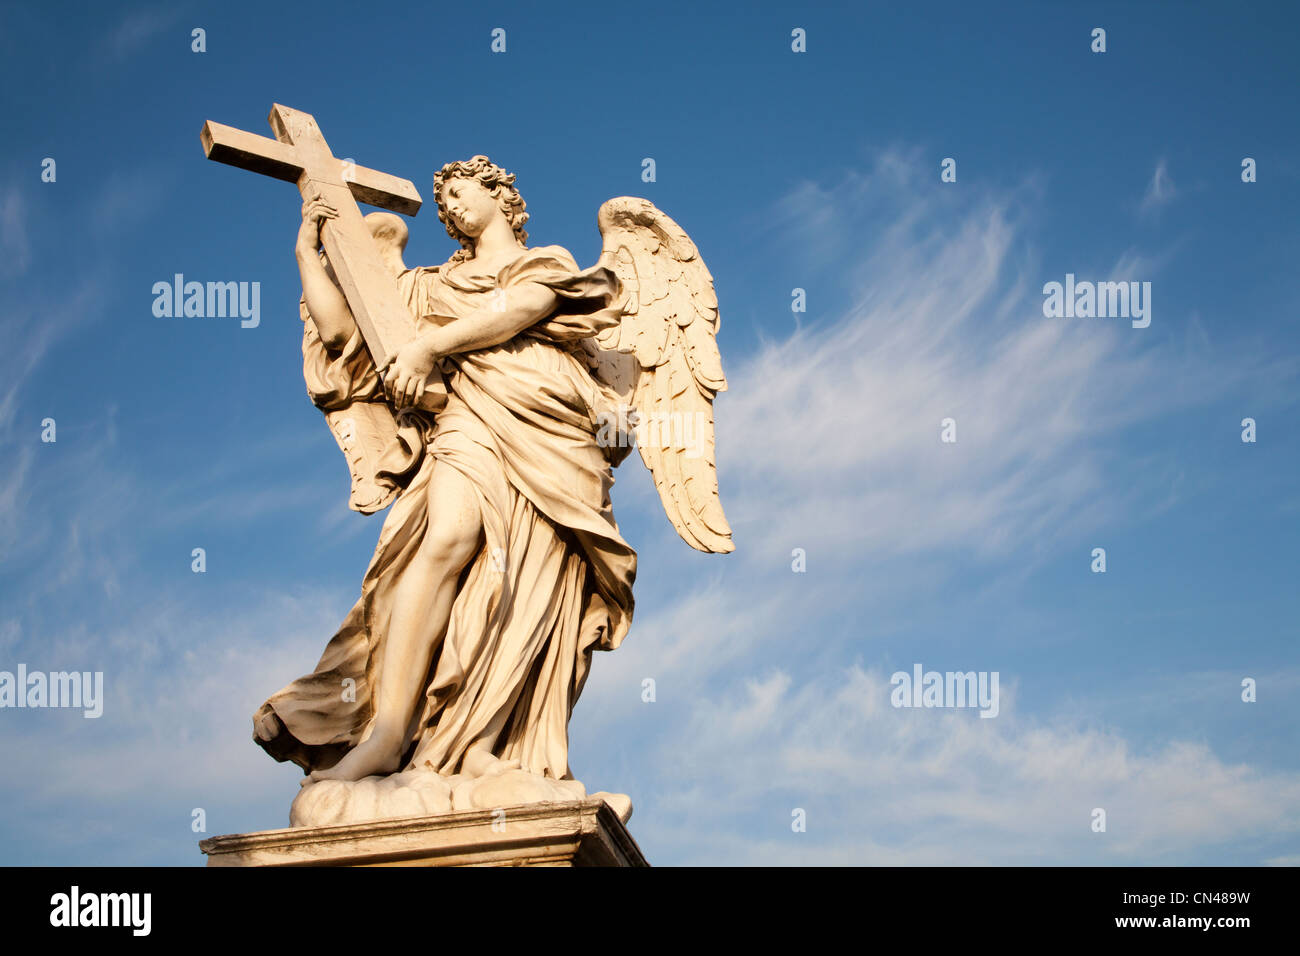 Rom - Engel mit dem Kreuz von Ercole Ferrata - Engel zu überbrücken Stockfoto